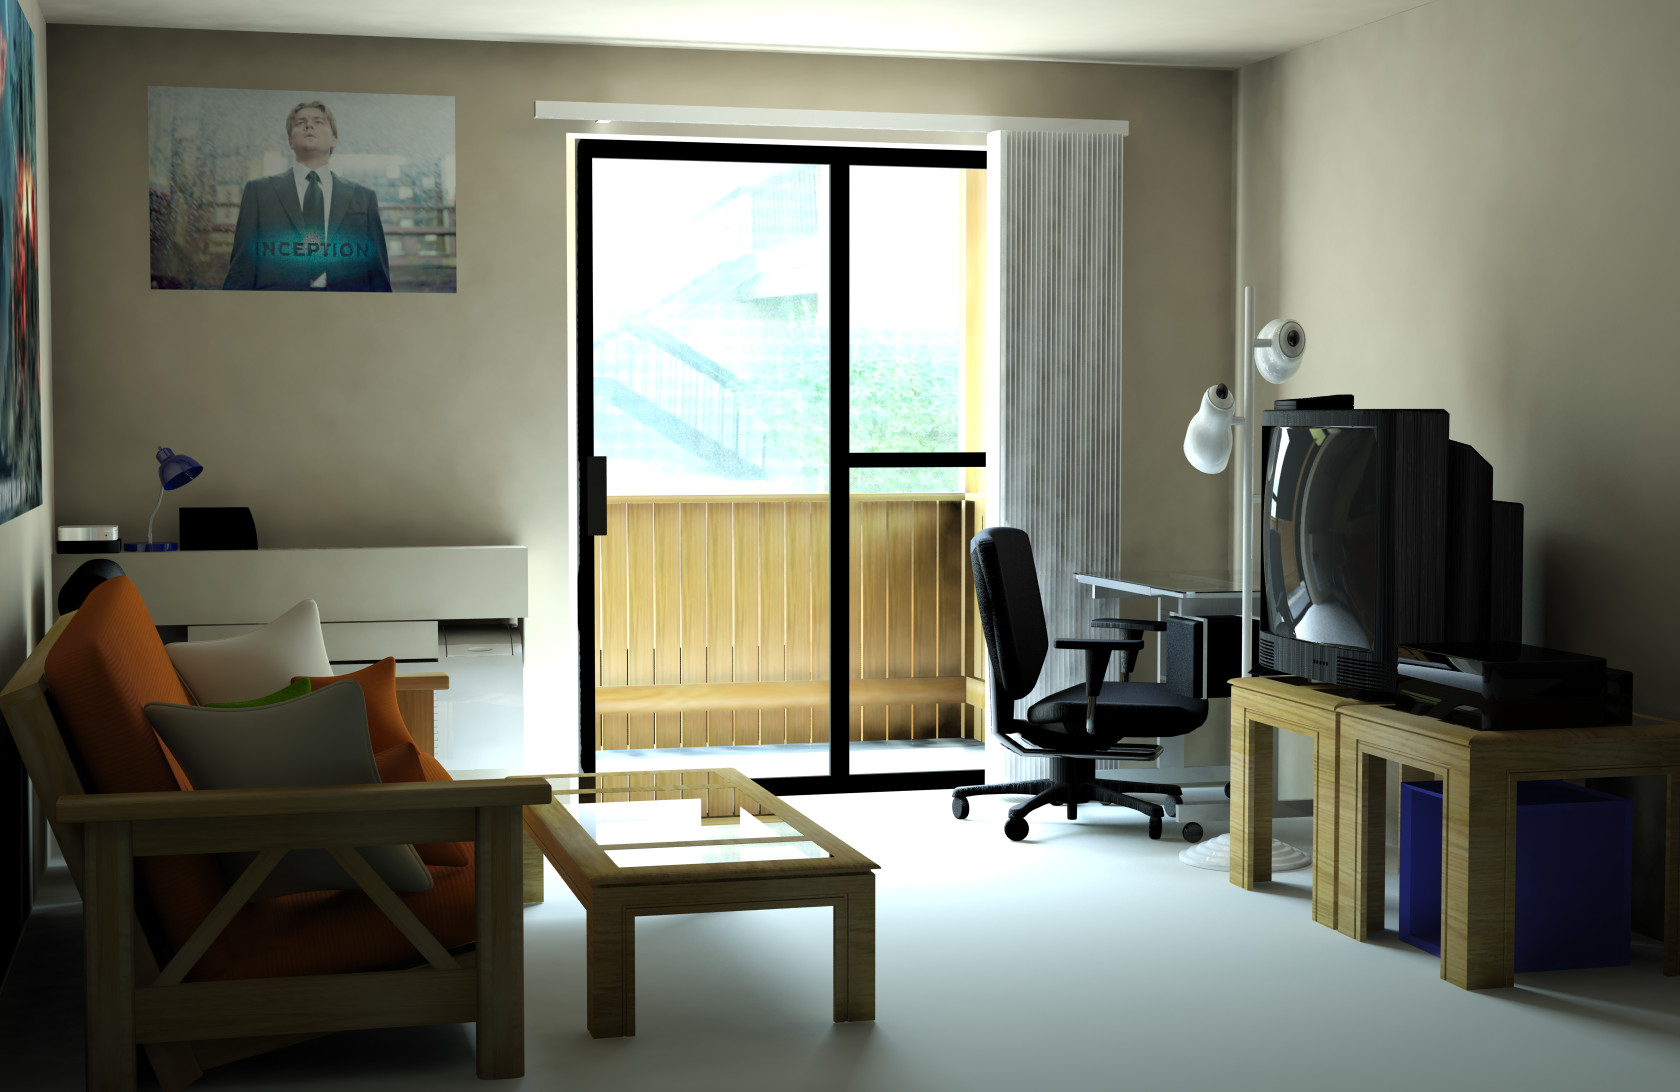 Virtual Living Room By Nickdagamer On Deviantart